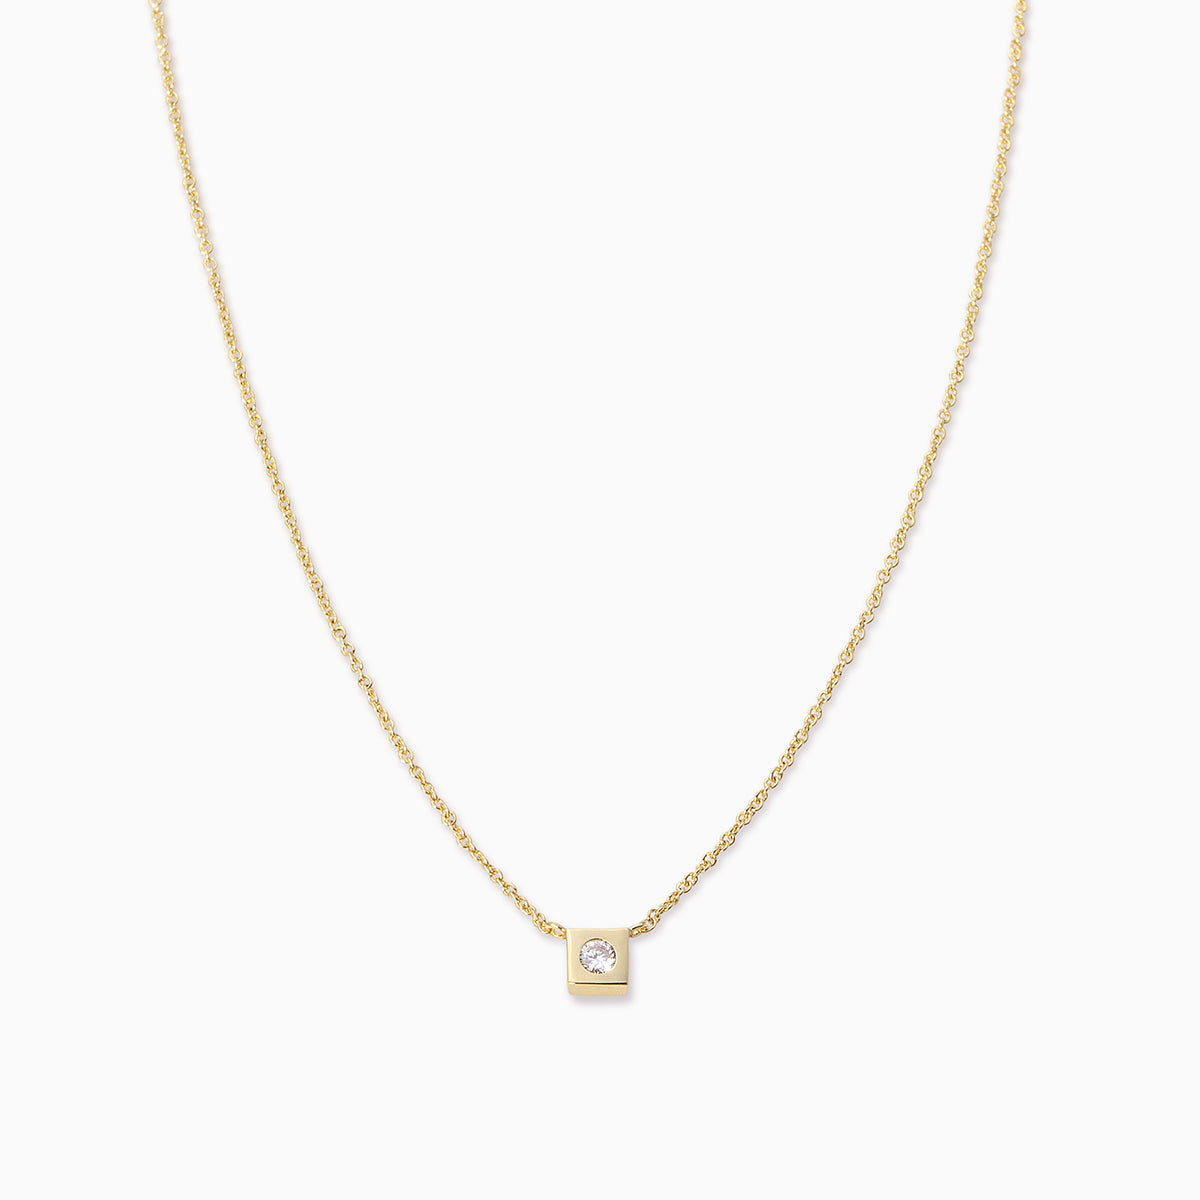 Uniform Necklace | Gold | Product Image | Uncommon James